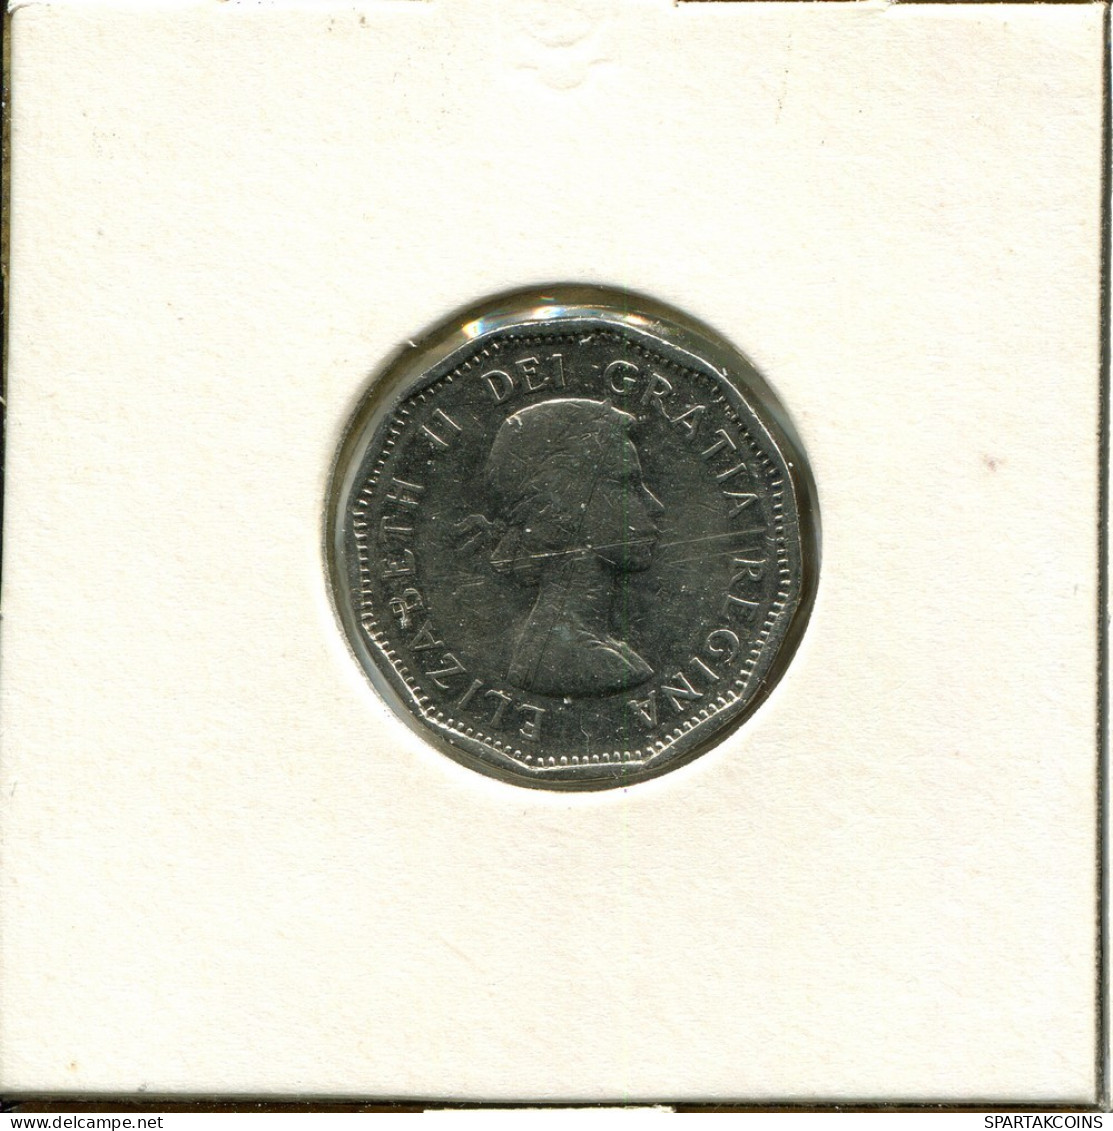 5 CENTS 1962 CANADA Moneda #AU172.E.A - Canada